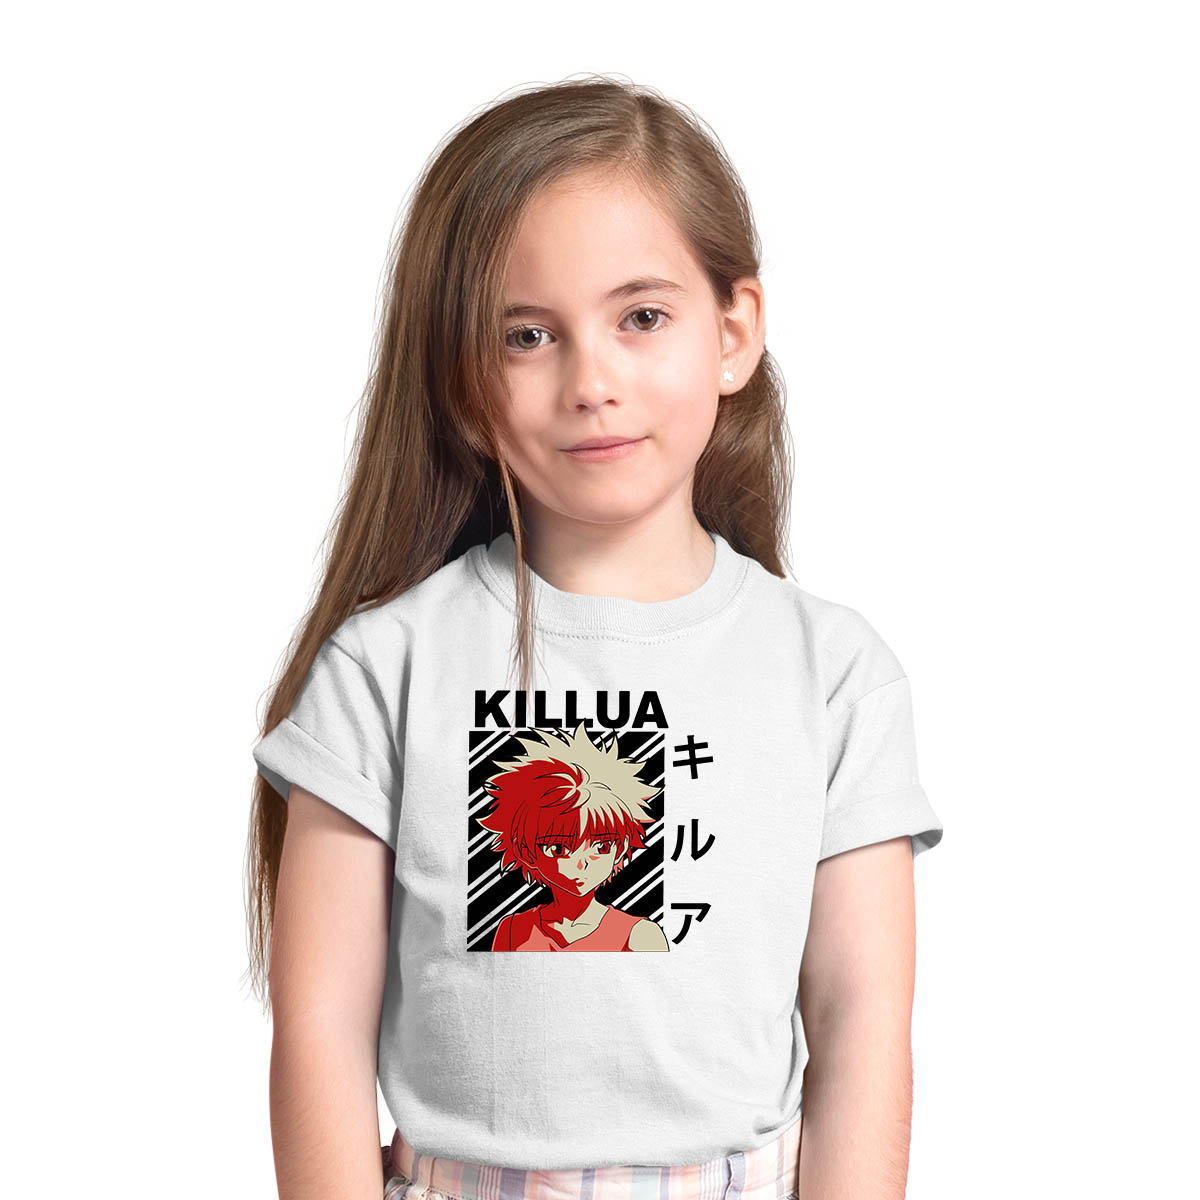 Killua Hunter X Hunter Japanese Anime White T-shirt for Kids